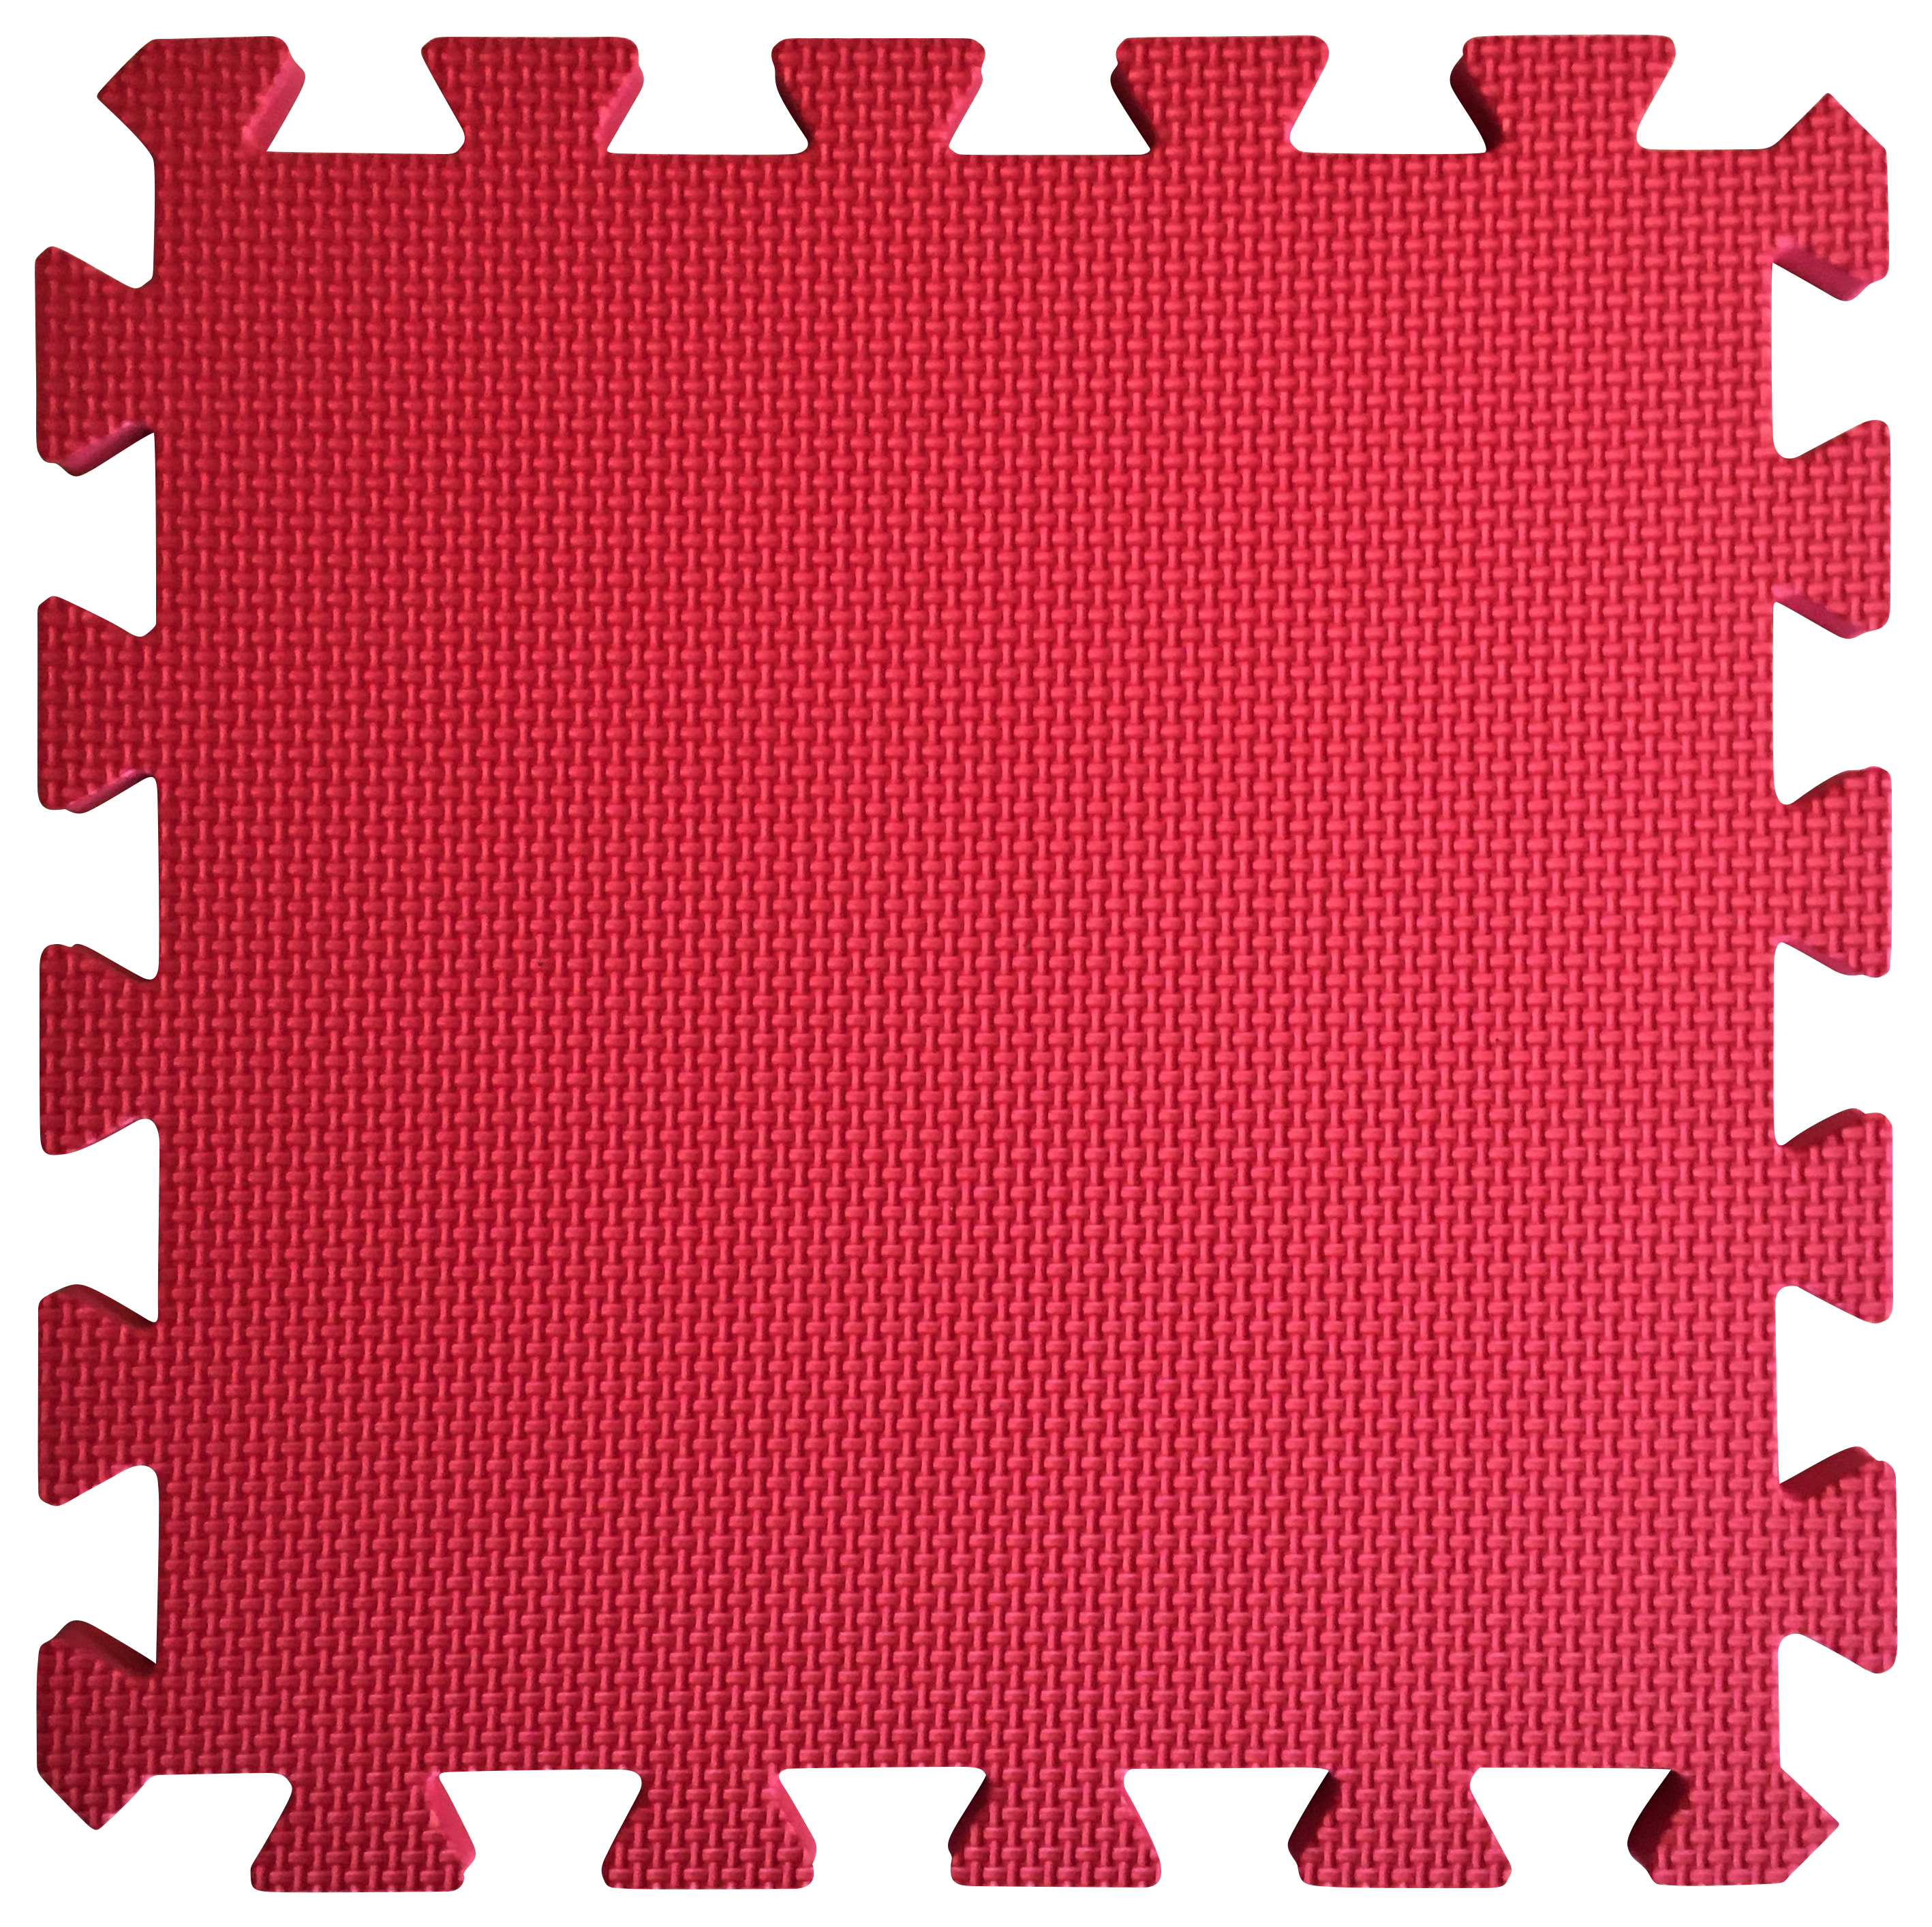 Image of Warm Floor Red Interlocking Floor Tiles for Garden Buildings - 10 x 10ft